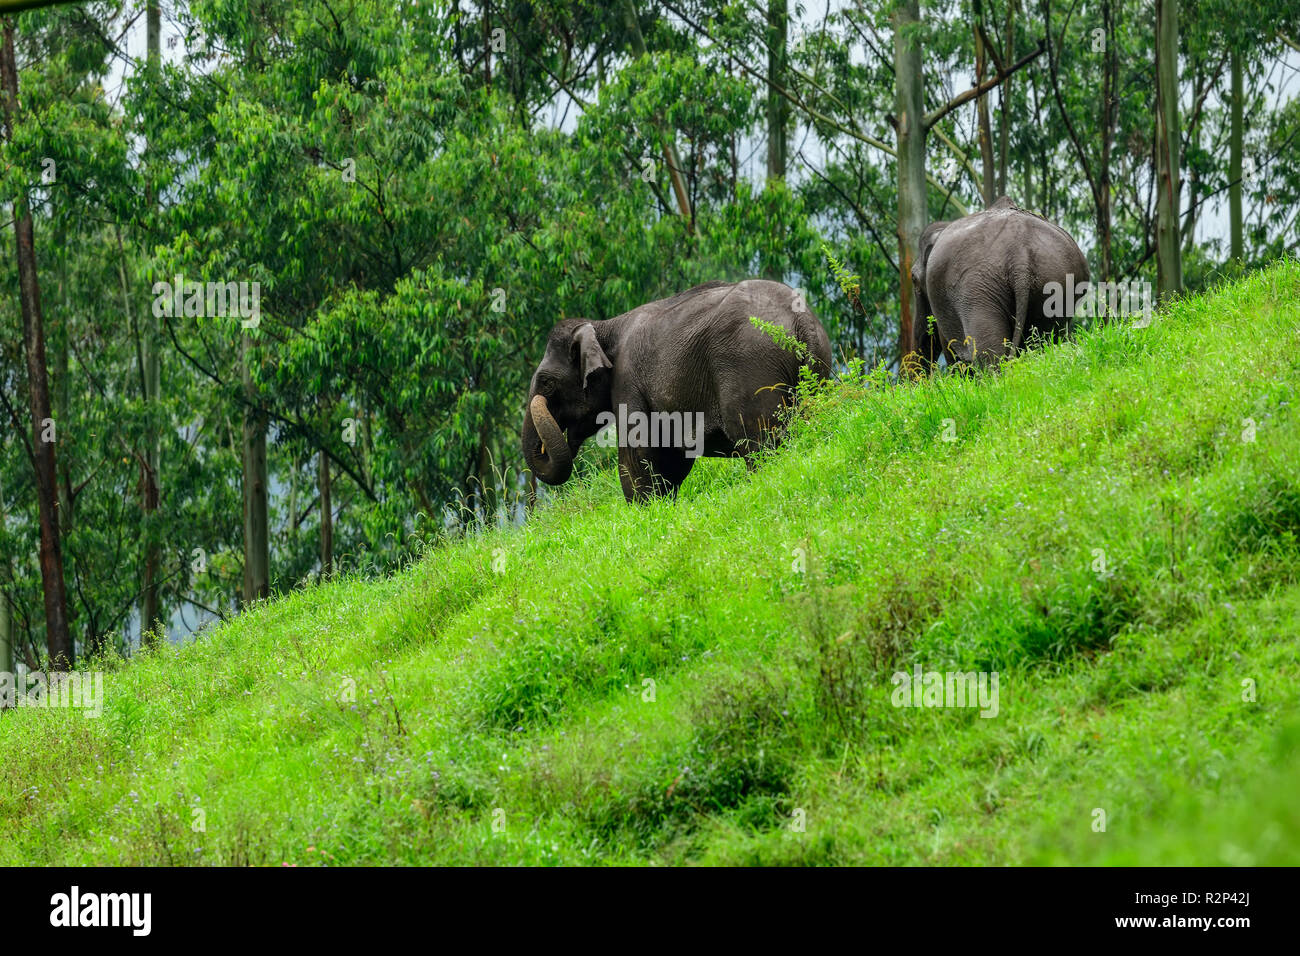 Los elefantes salvajes de pastoreo en pasto verde bosque pradera. familia de elefantes en safari aventura trekking en montaña de Munnar, Kerala, India. Foto de stock